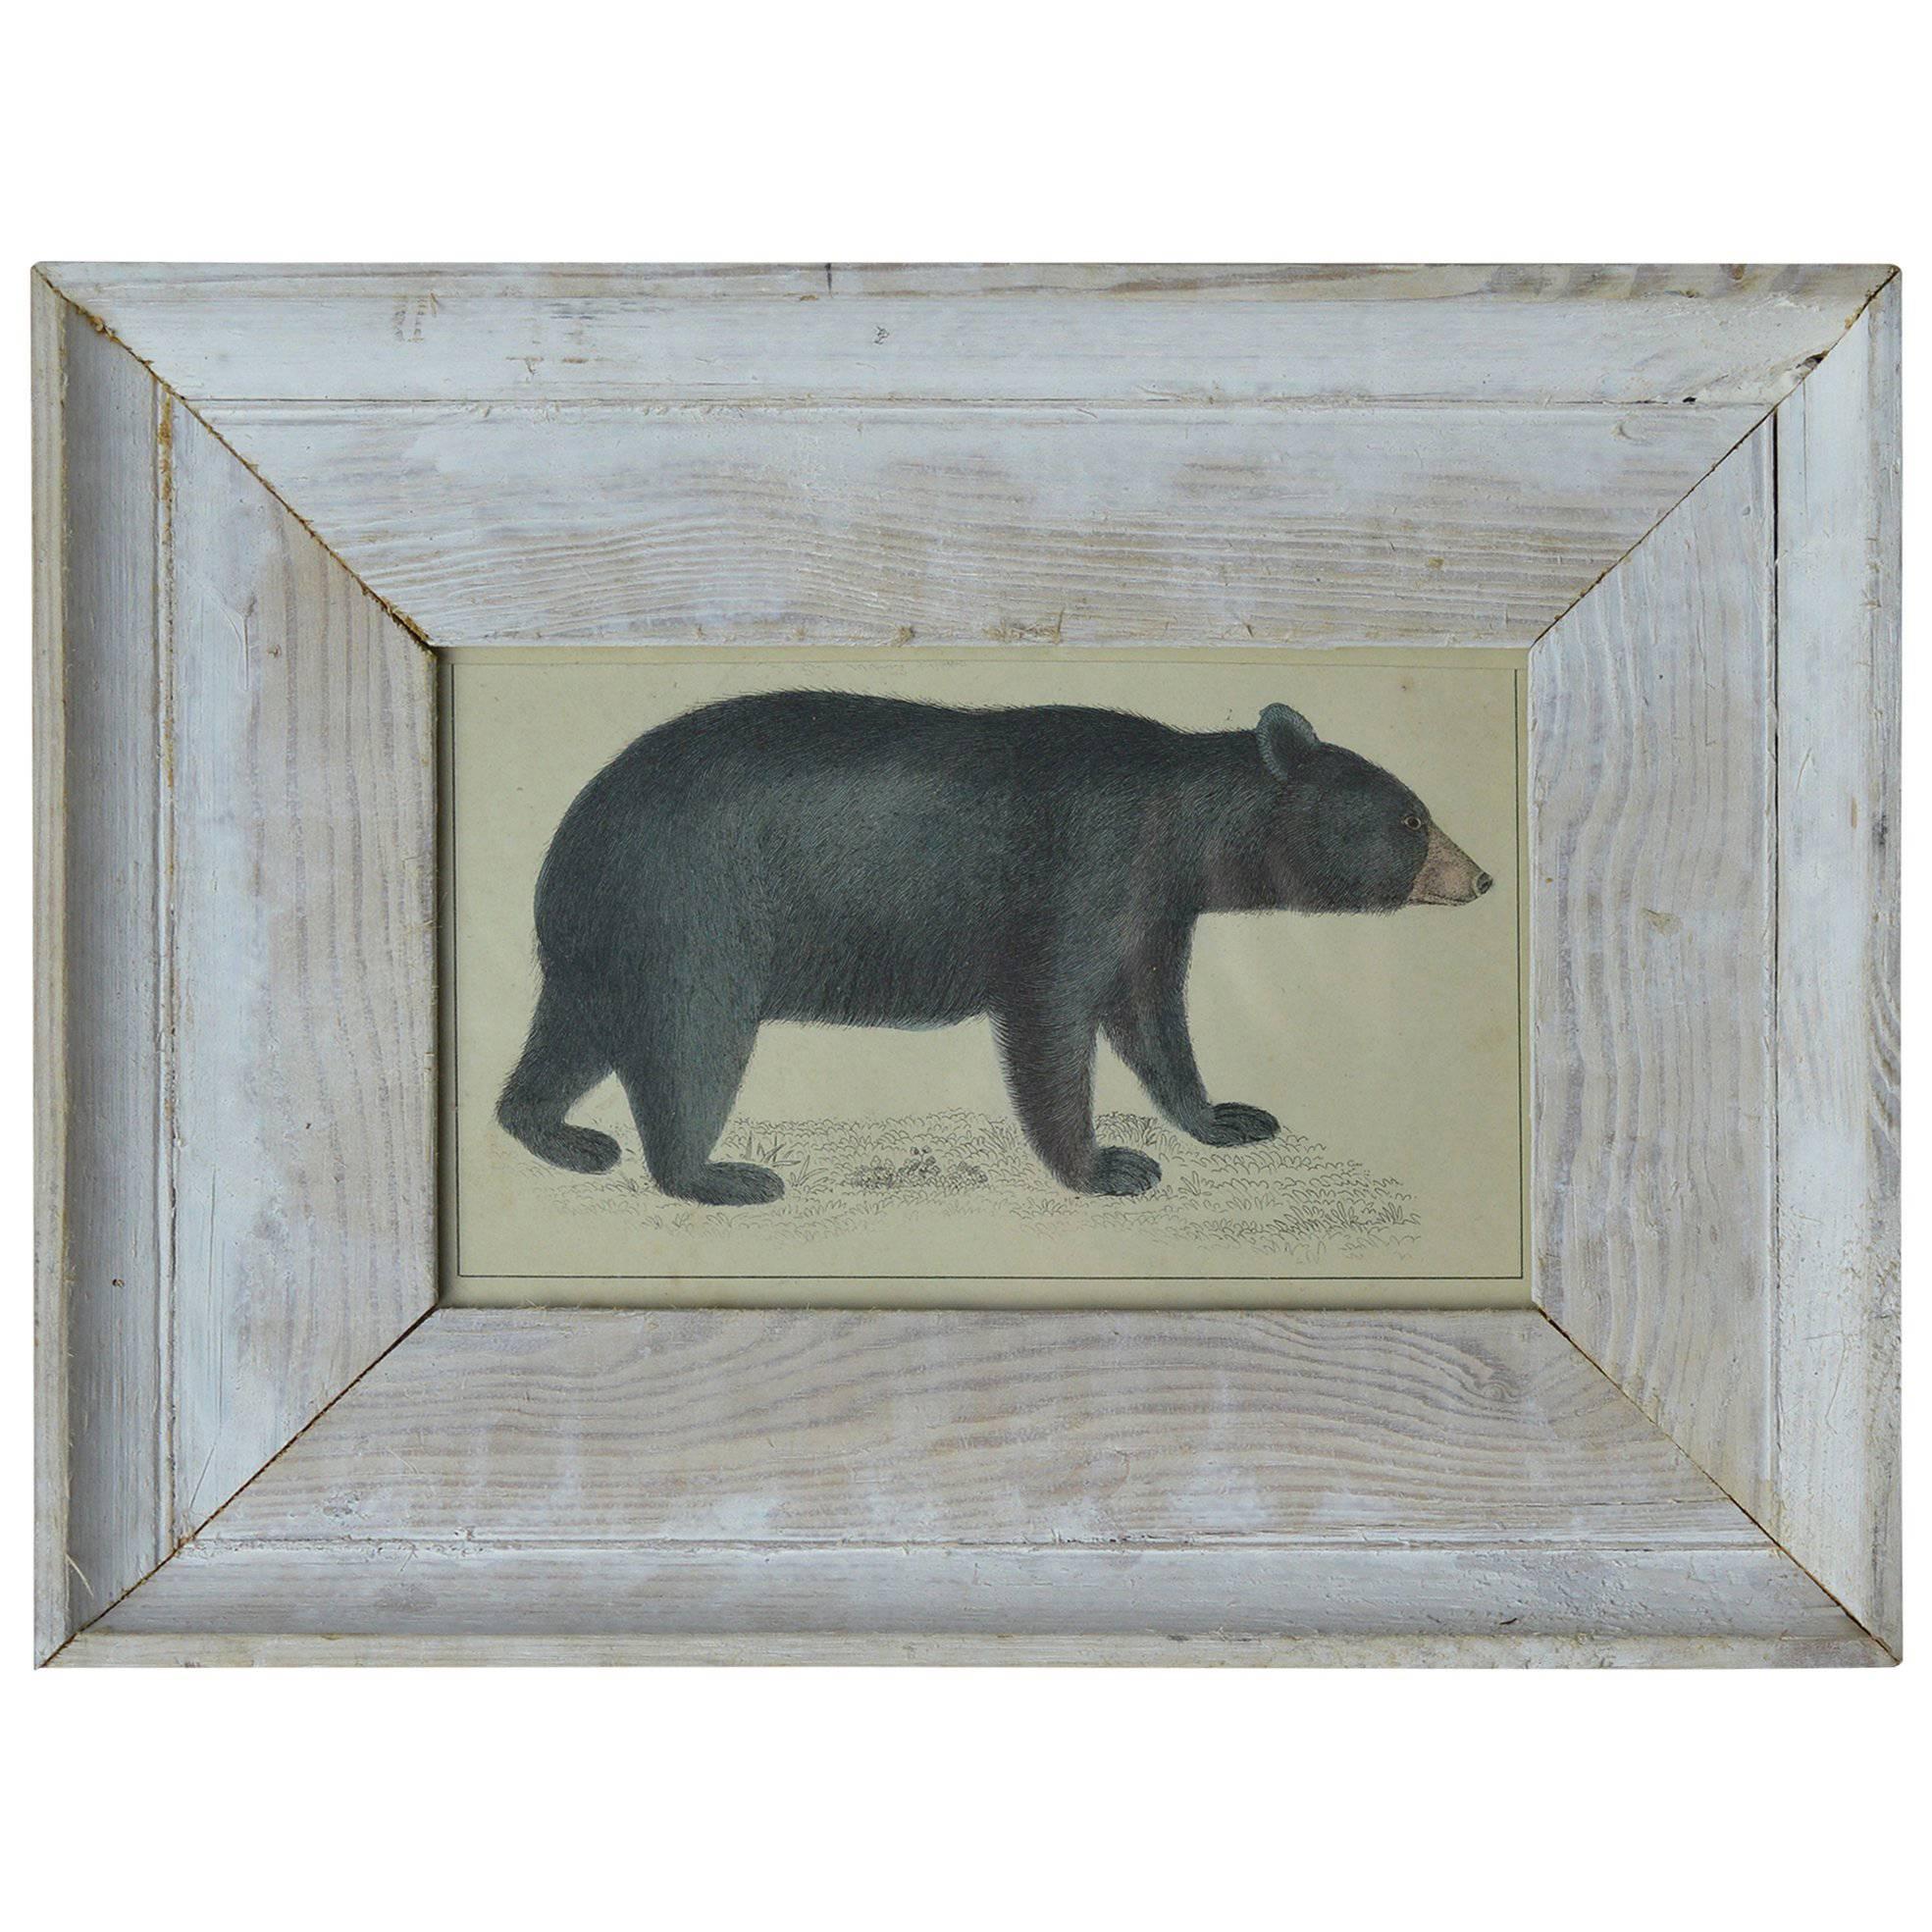 Original Antique Print of a Bear, circa 1850